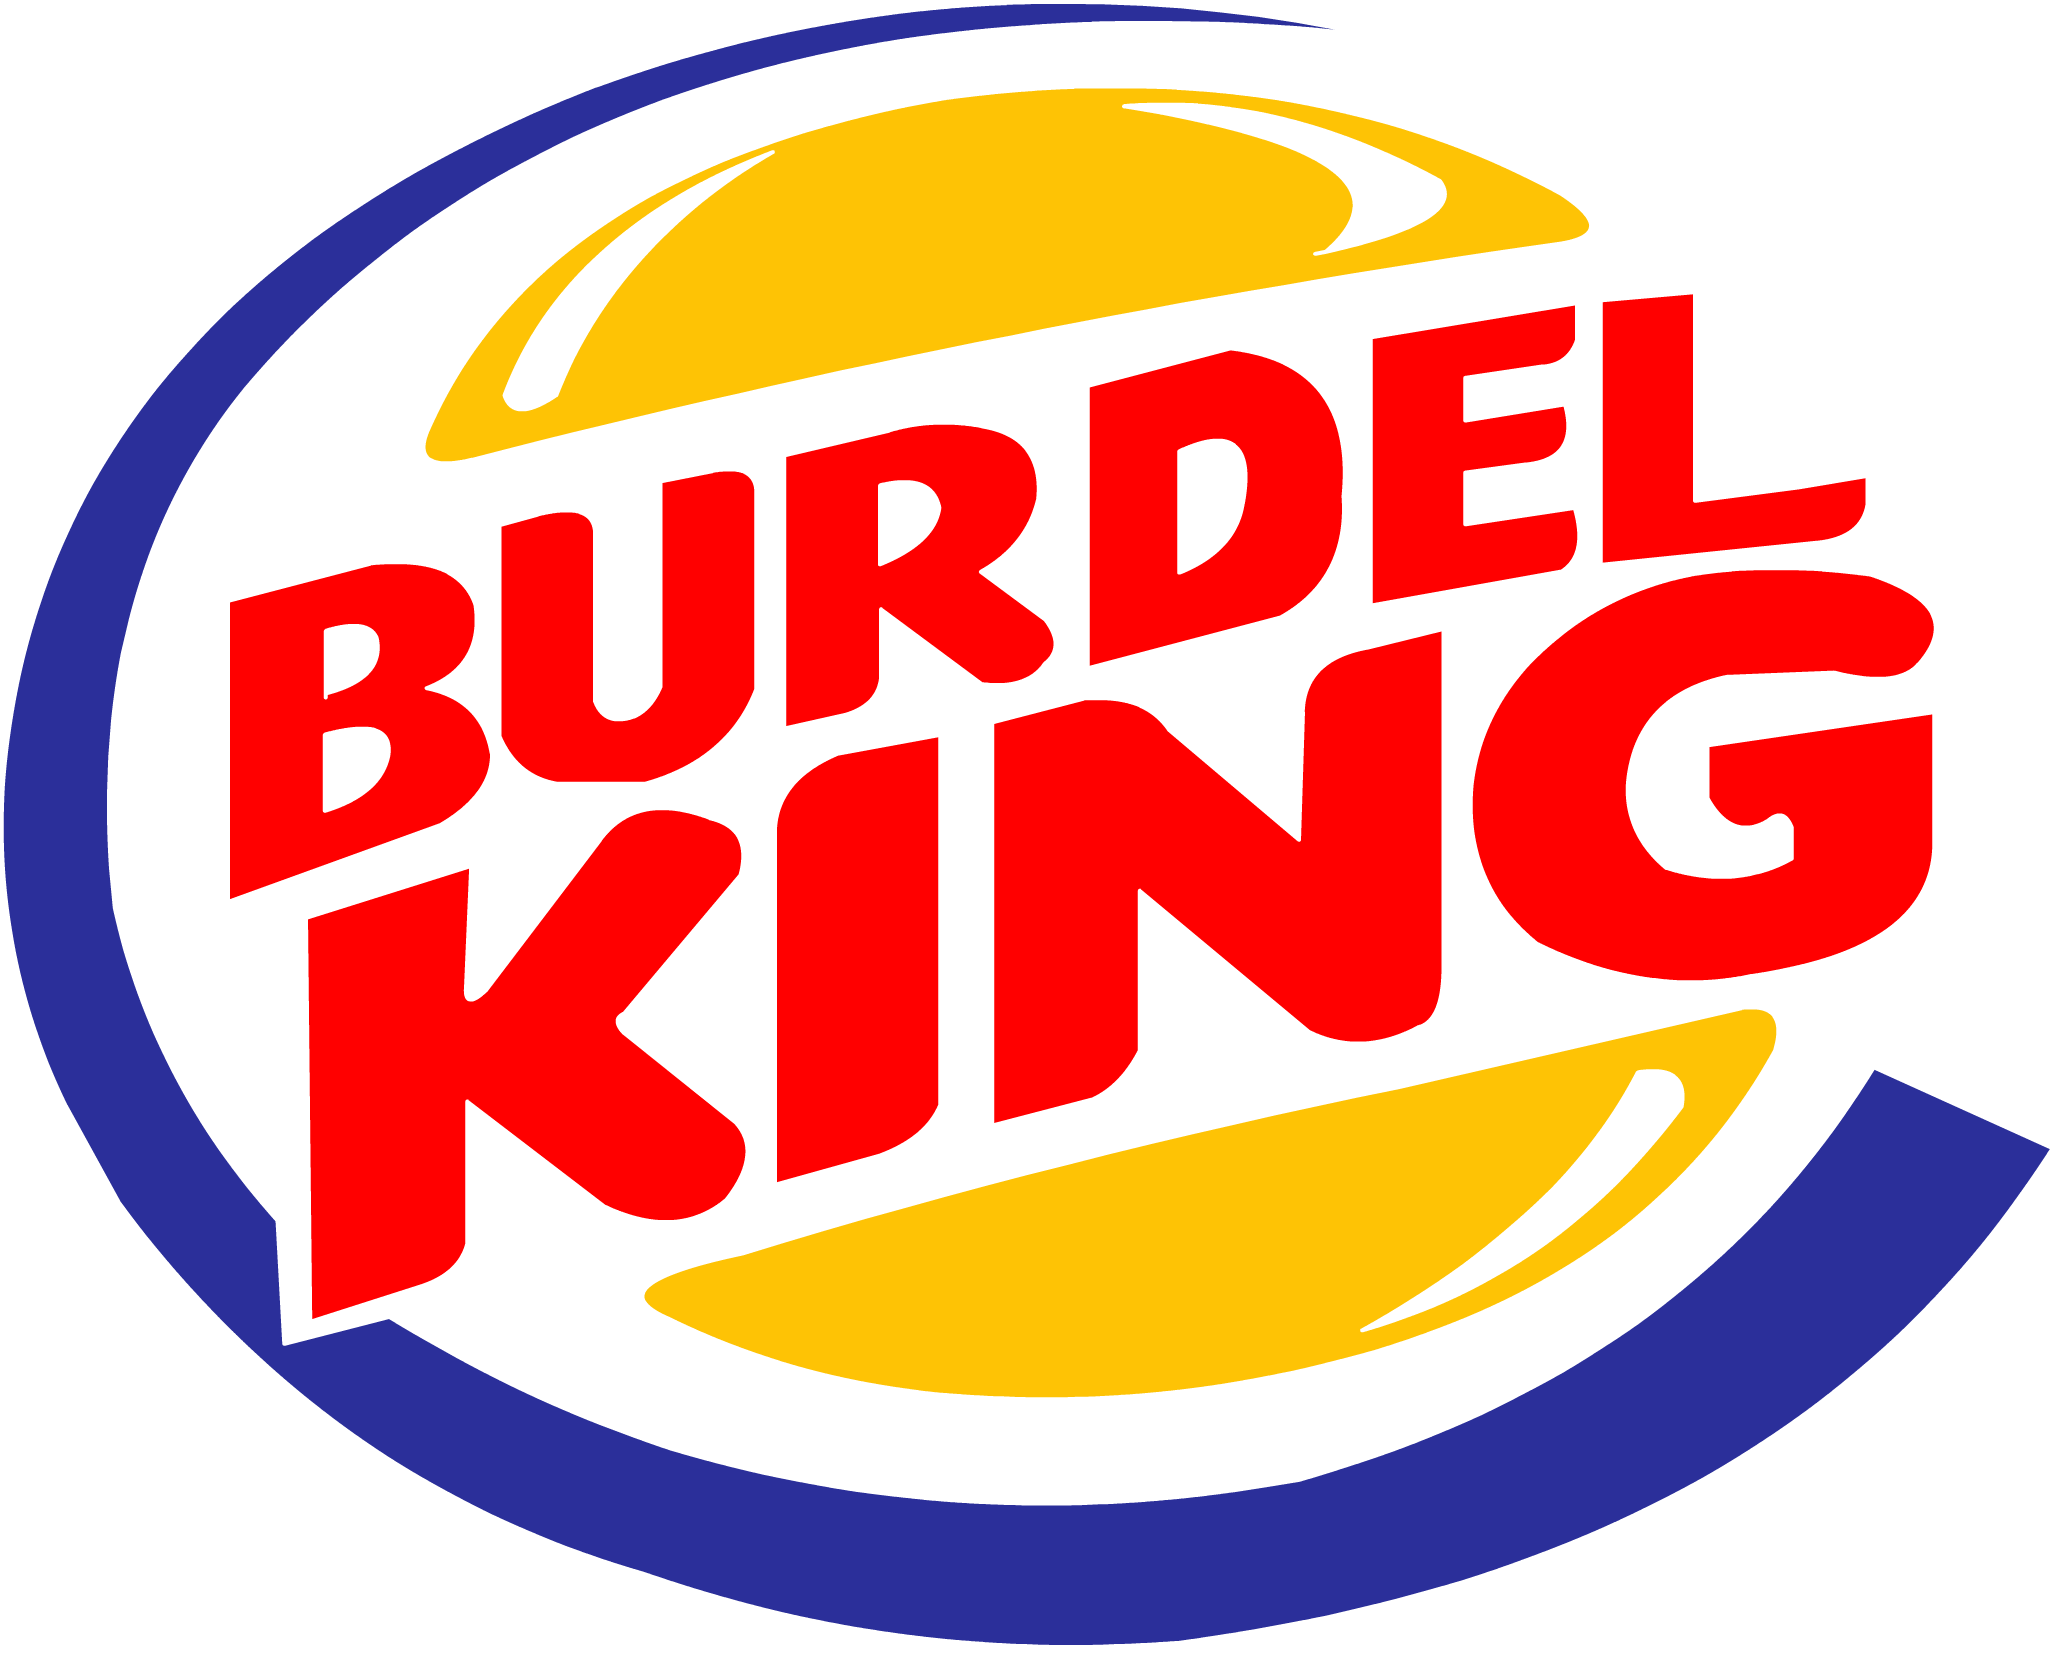 Burdel King By Xlisjen On Deviantart